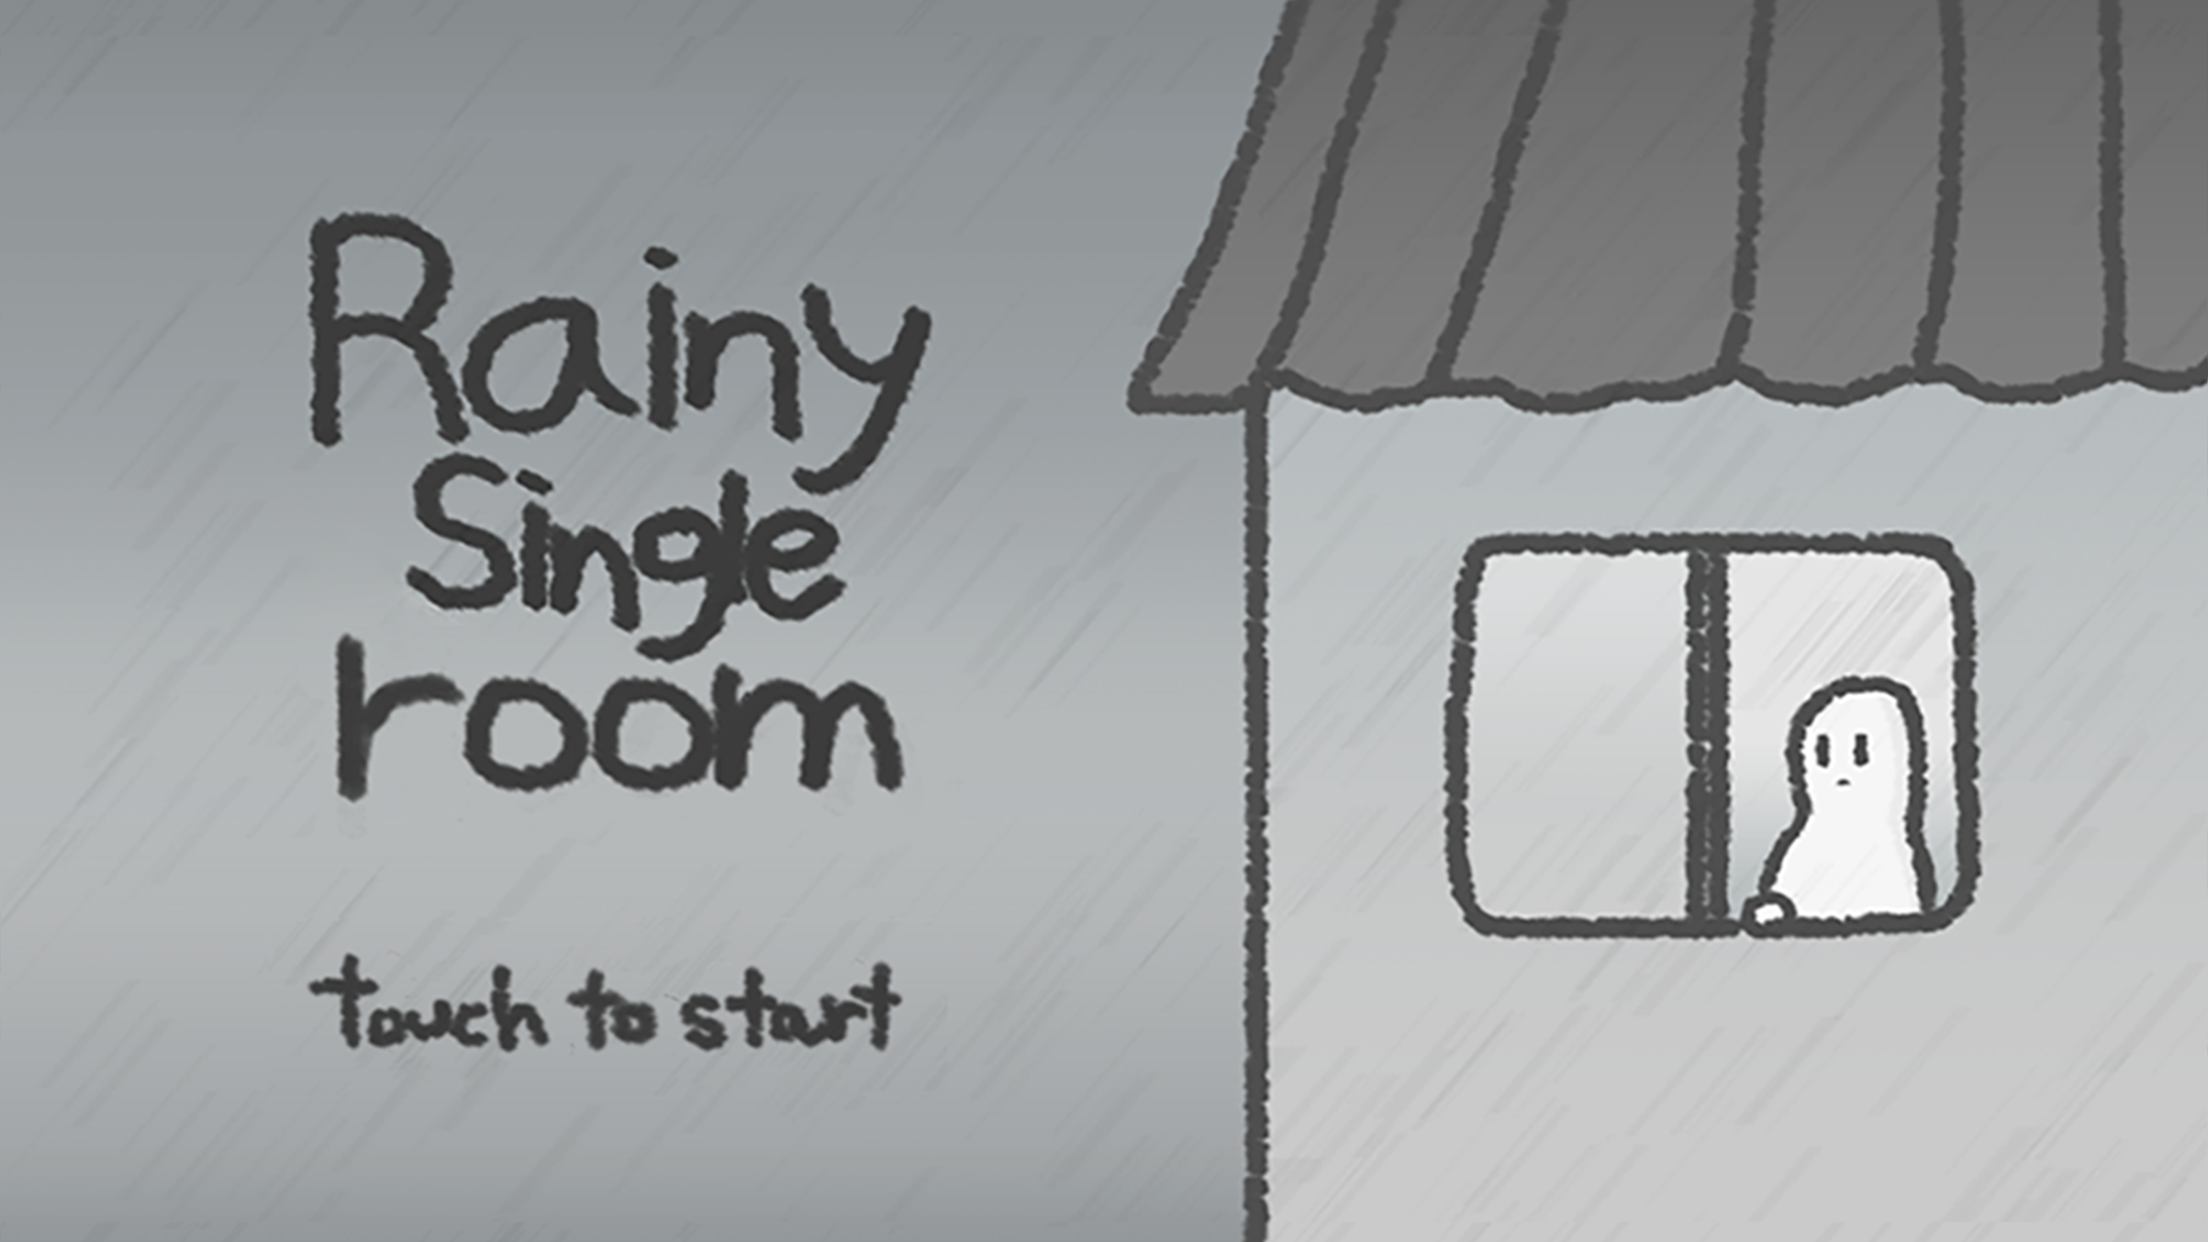 Rainy single room screenshot game